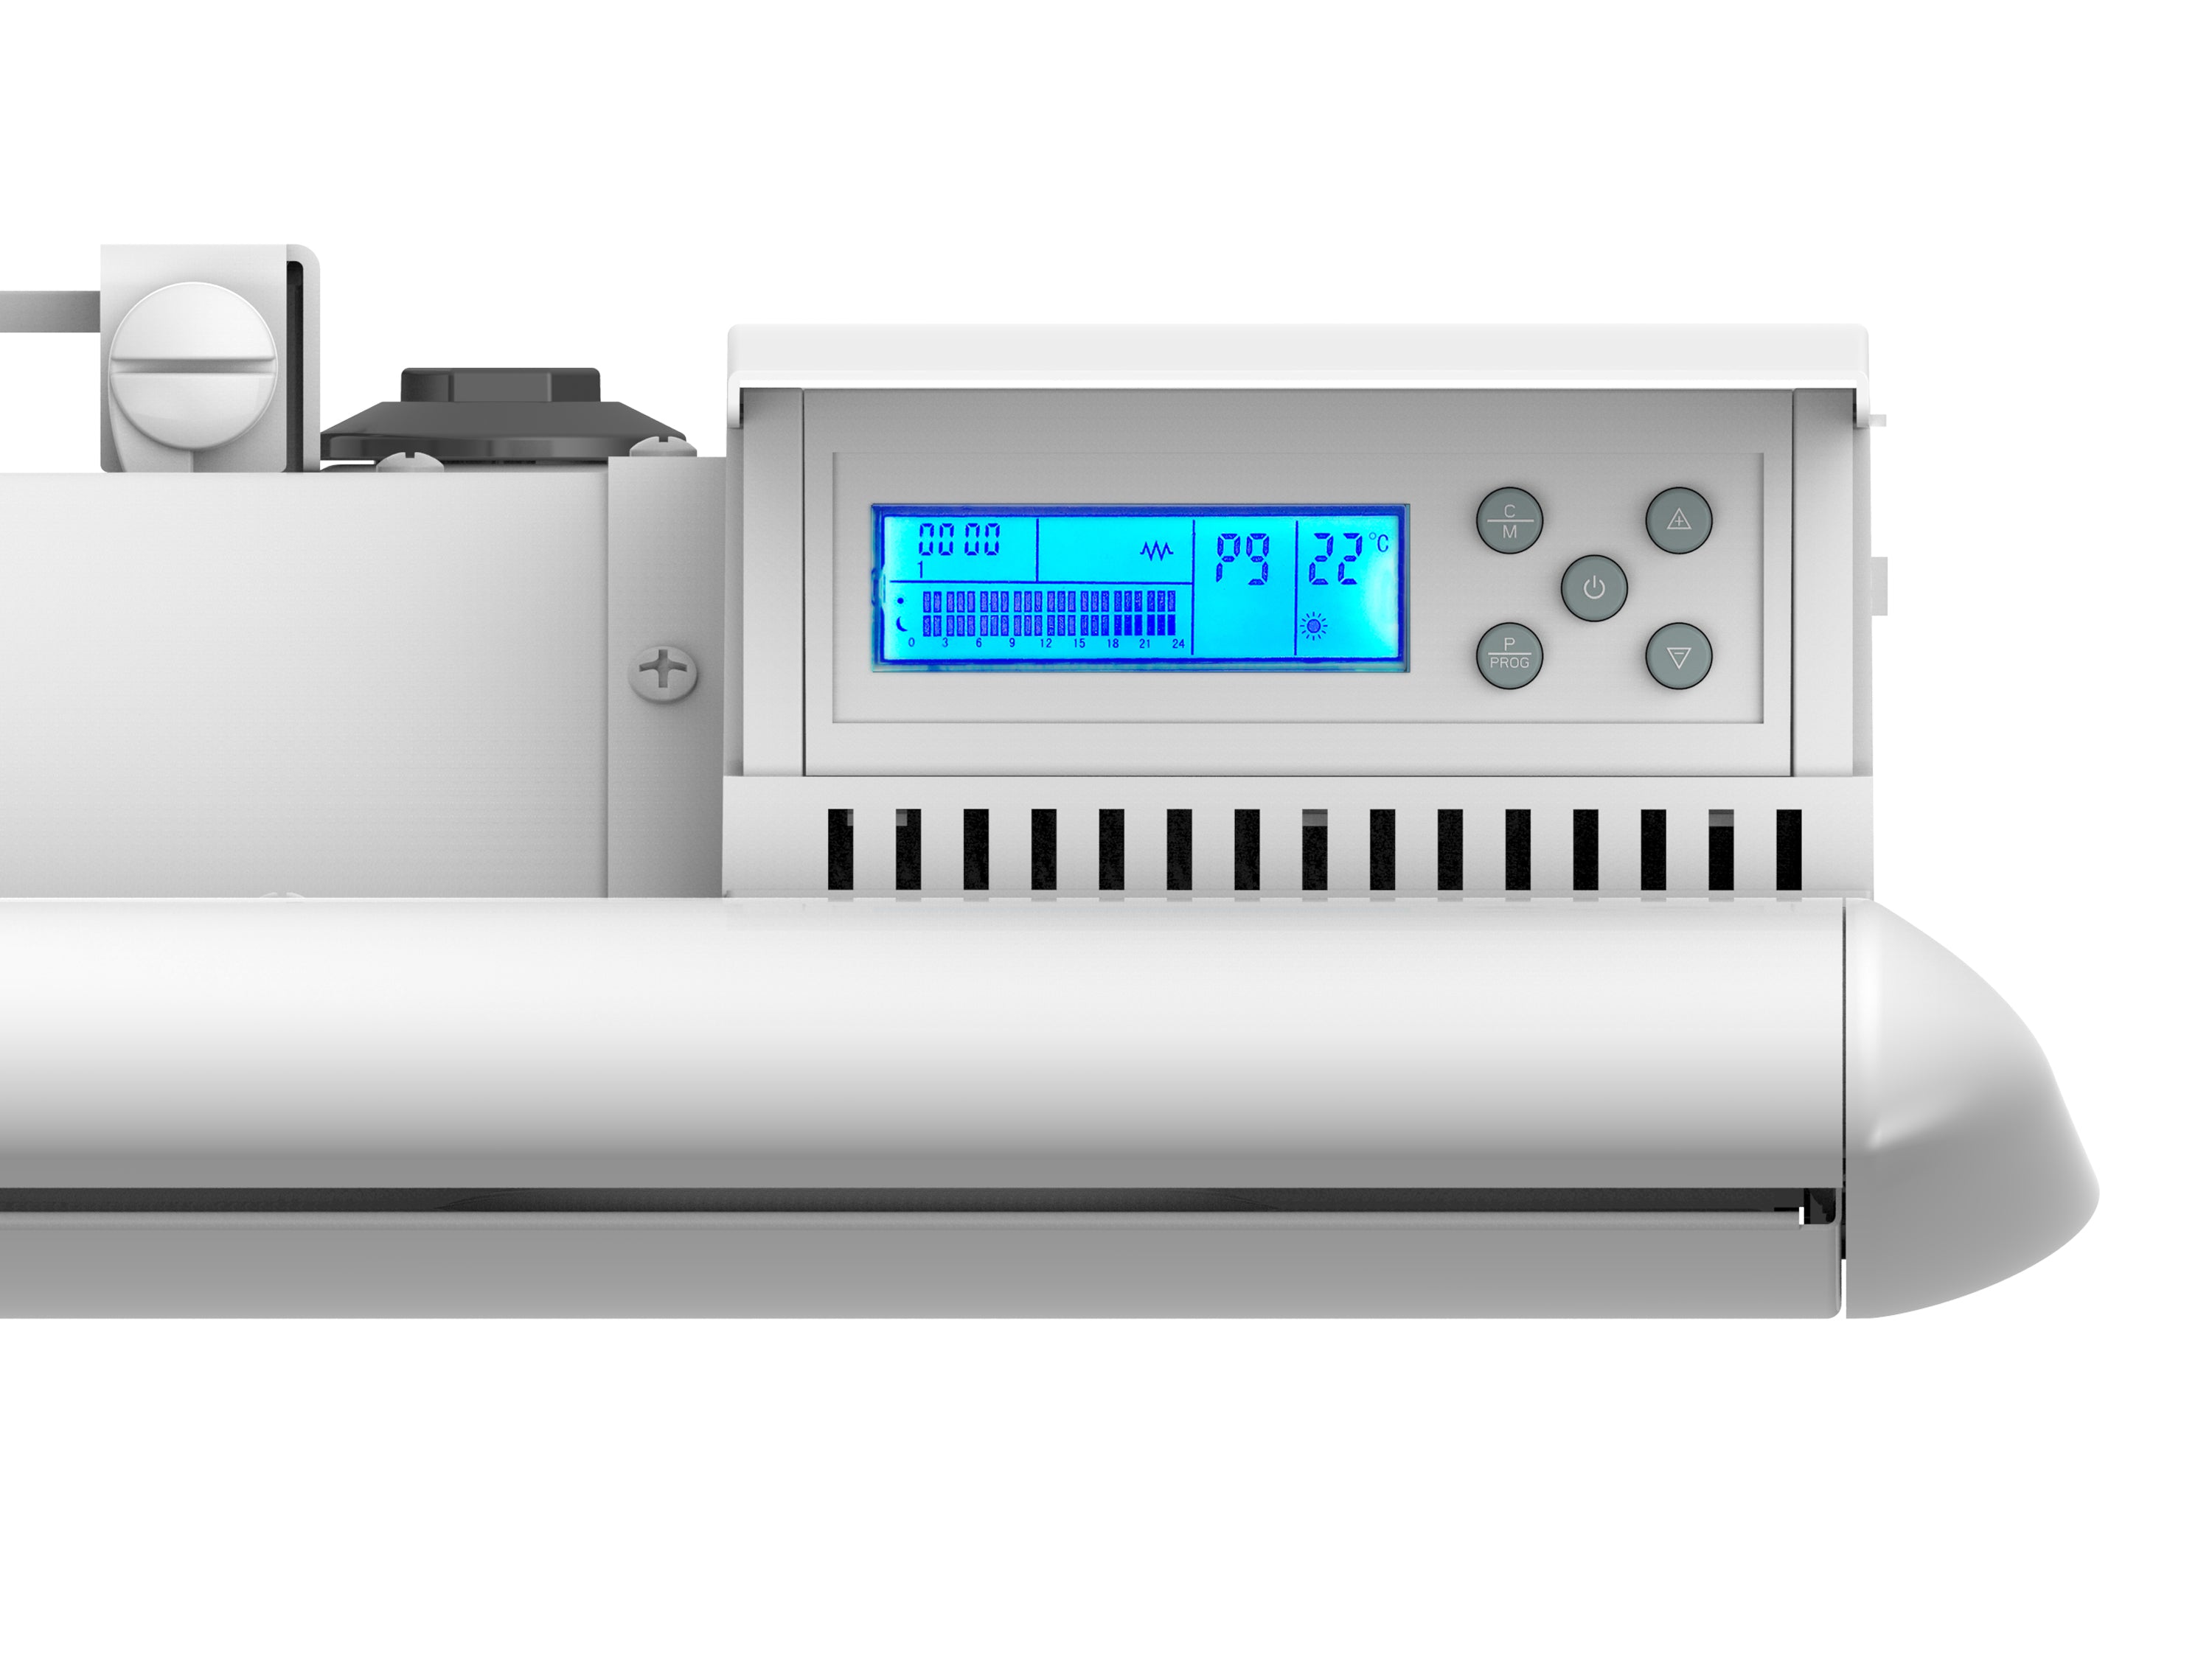 Emetteur thermique 1000W faible consommation avec contrôle WIFI